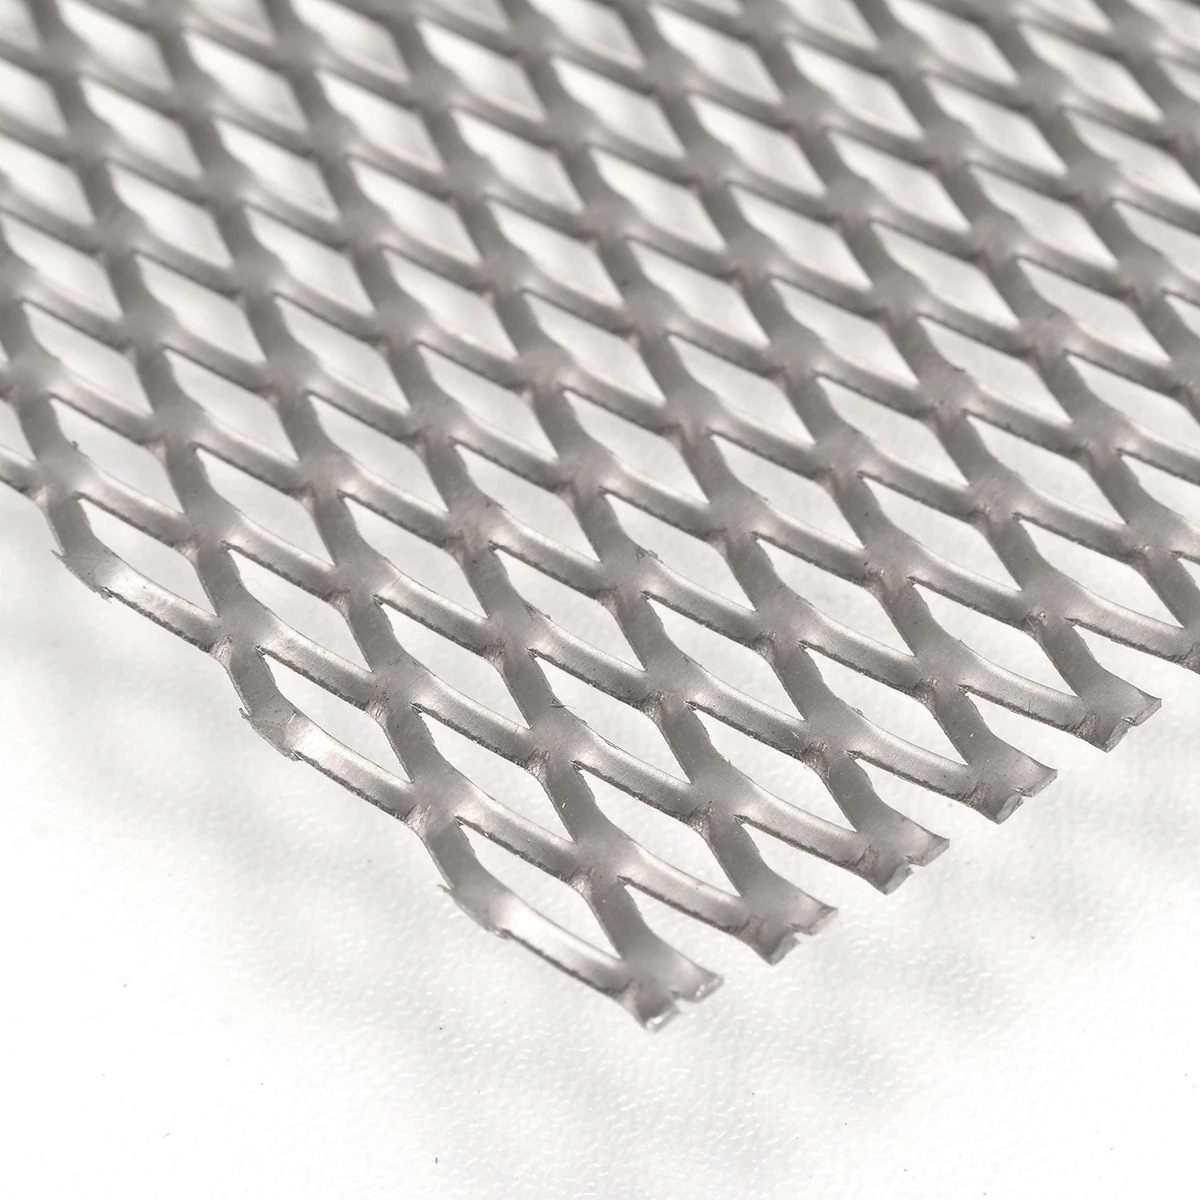 Новое металлическое отверстие, титановый сетчатый лист 30 см X 20 см, перфорированная пластина, расширенная термостойкая к коррозии сетка толщиной 0,5 мм